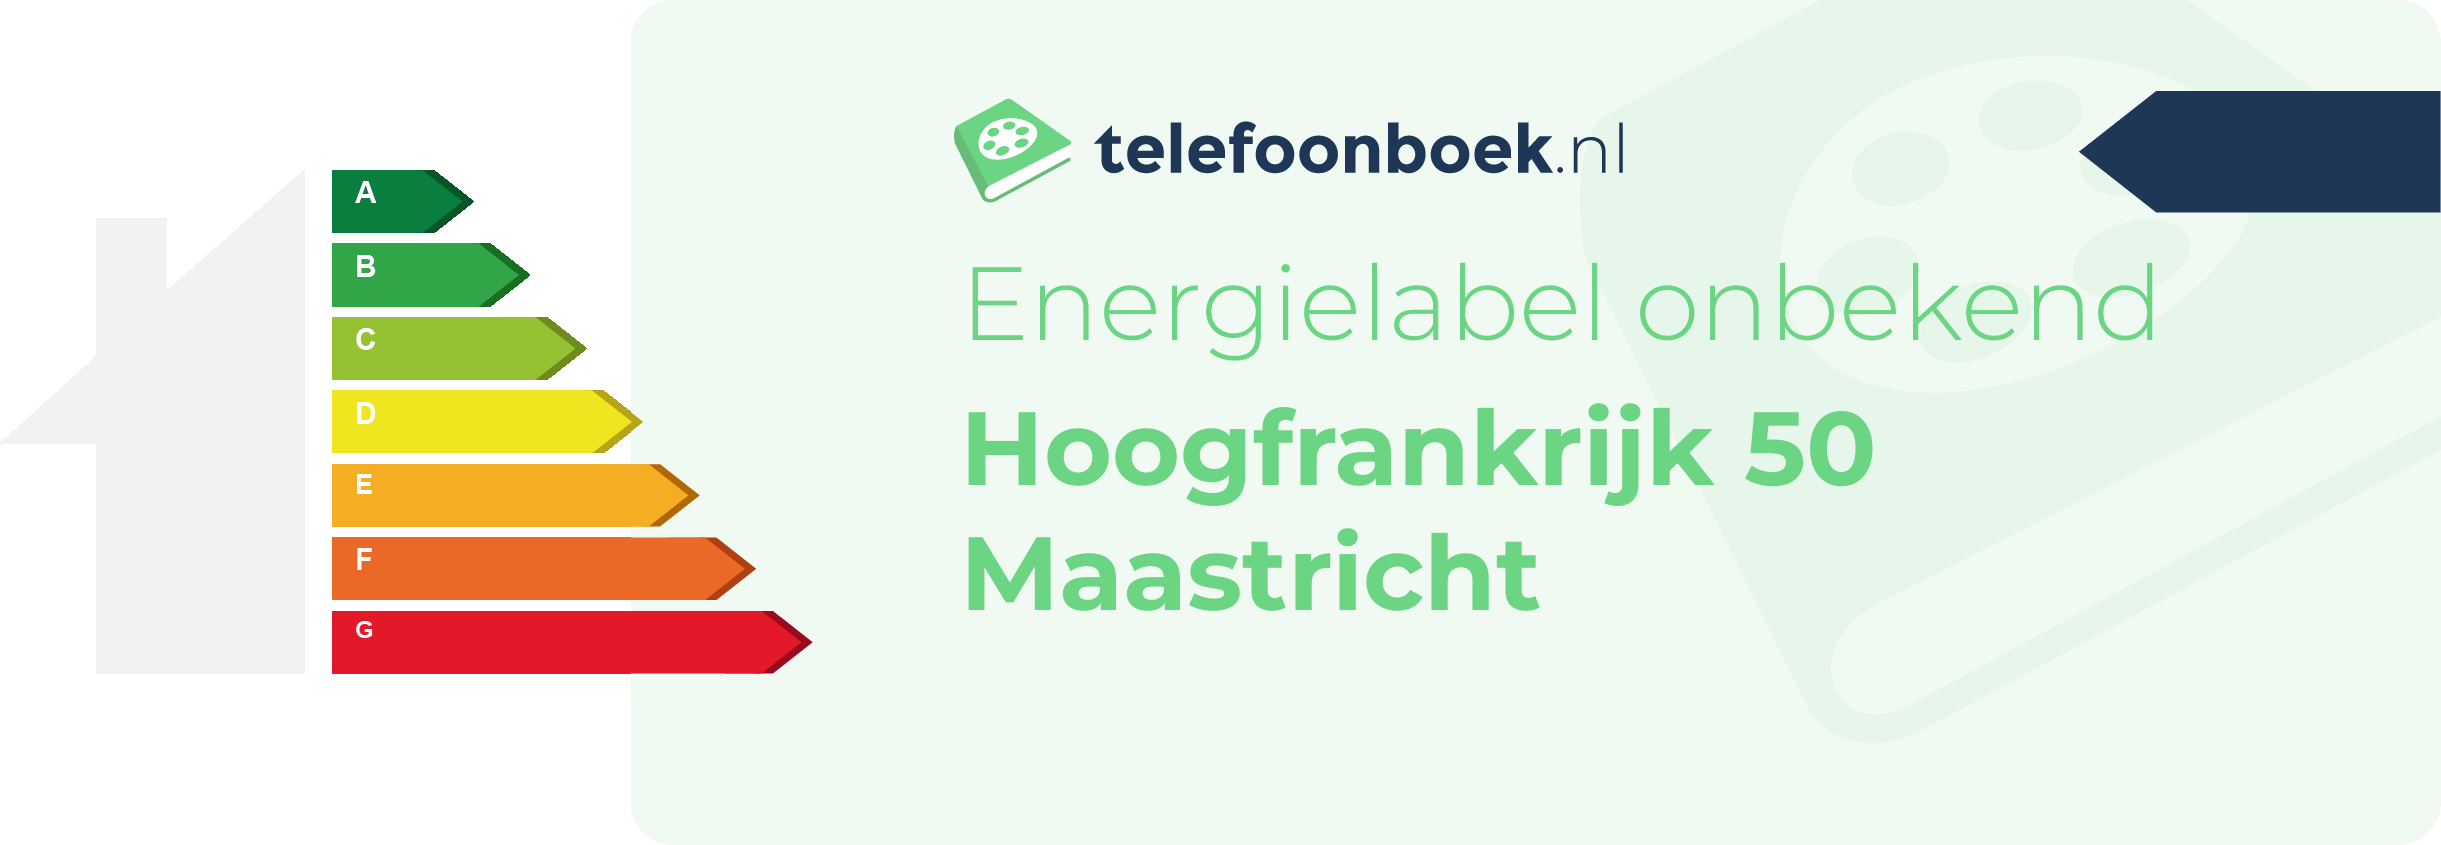 Energielabel Hoogfrankrijk 50 Maastricht